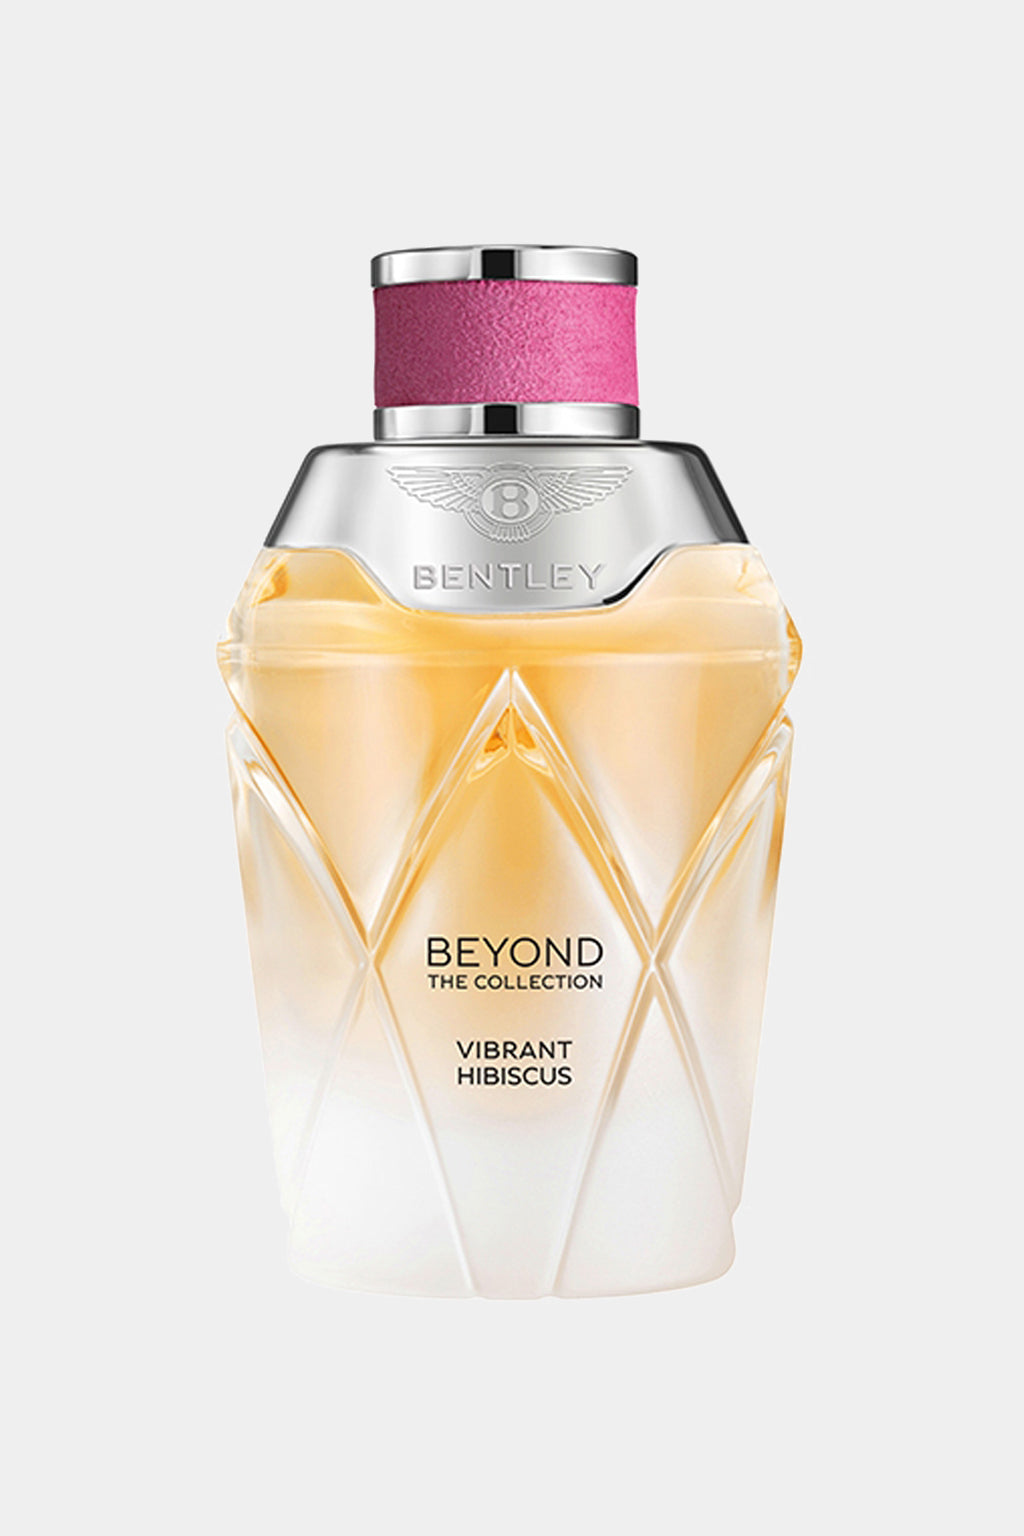 Bentley - Beyond The Collection Vibrant Hibiscus Seoul - Eau De Parfum 100ML